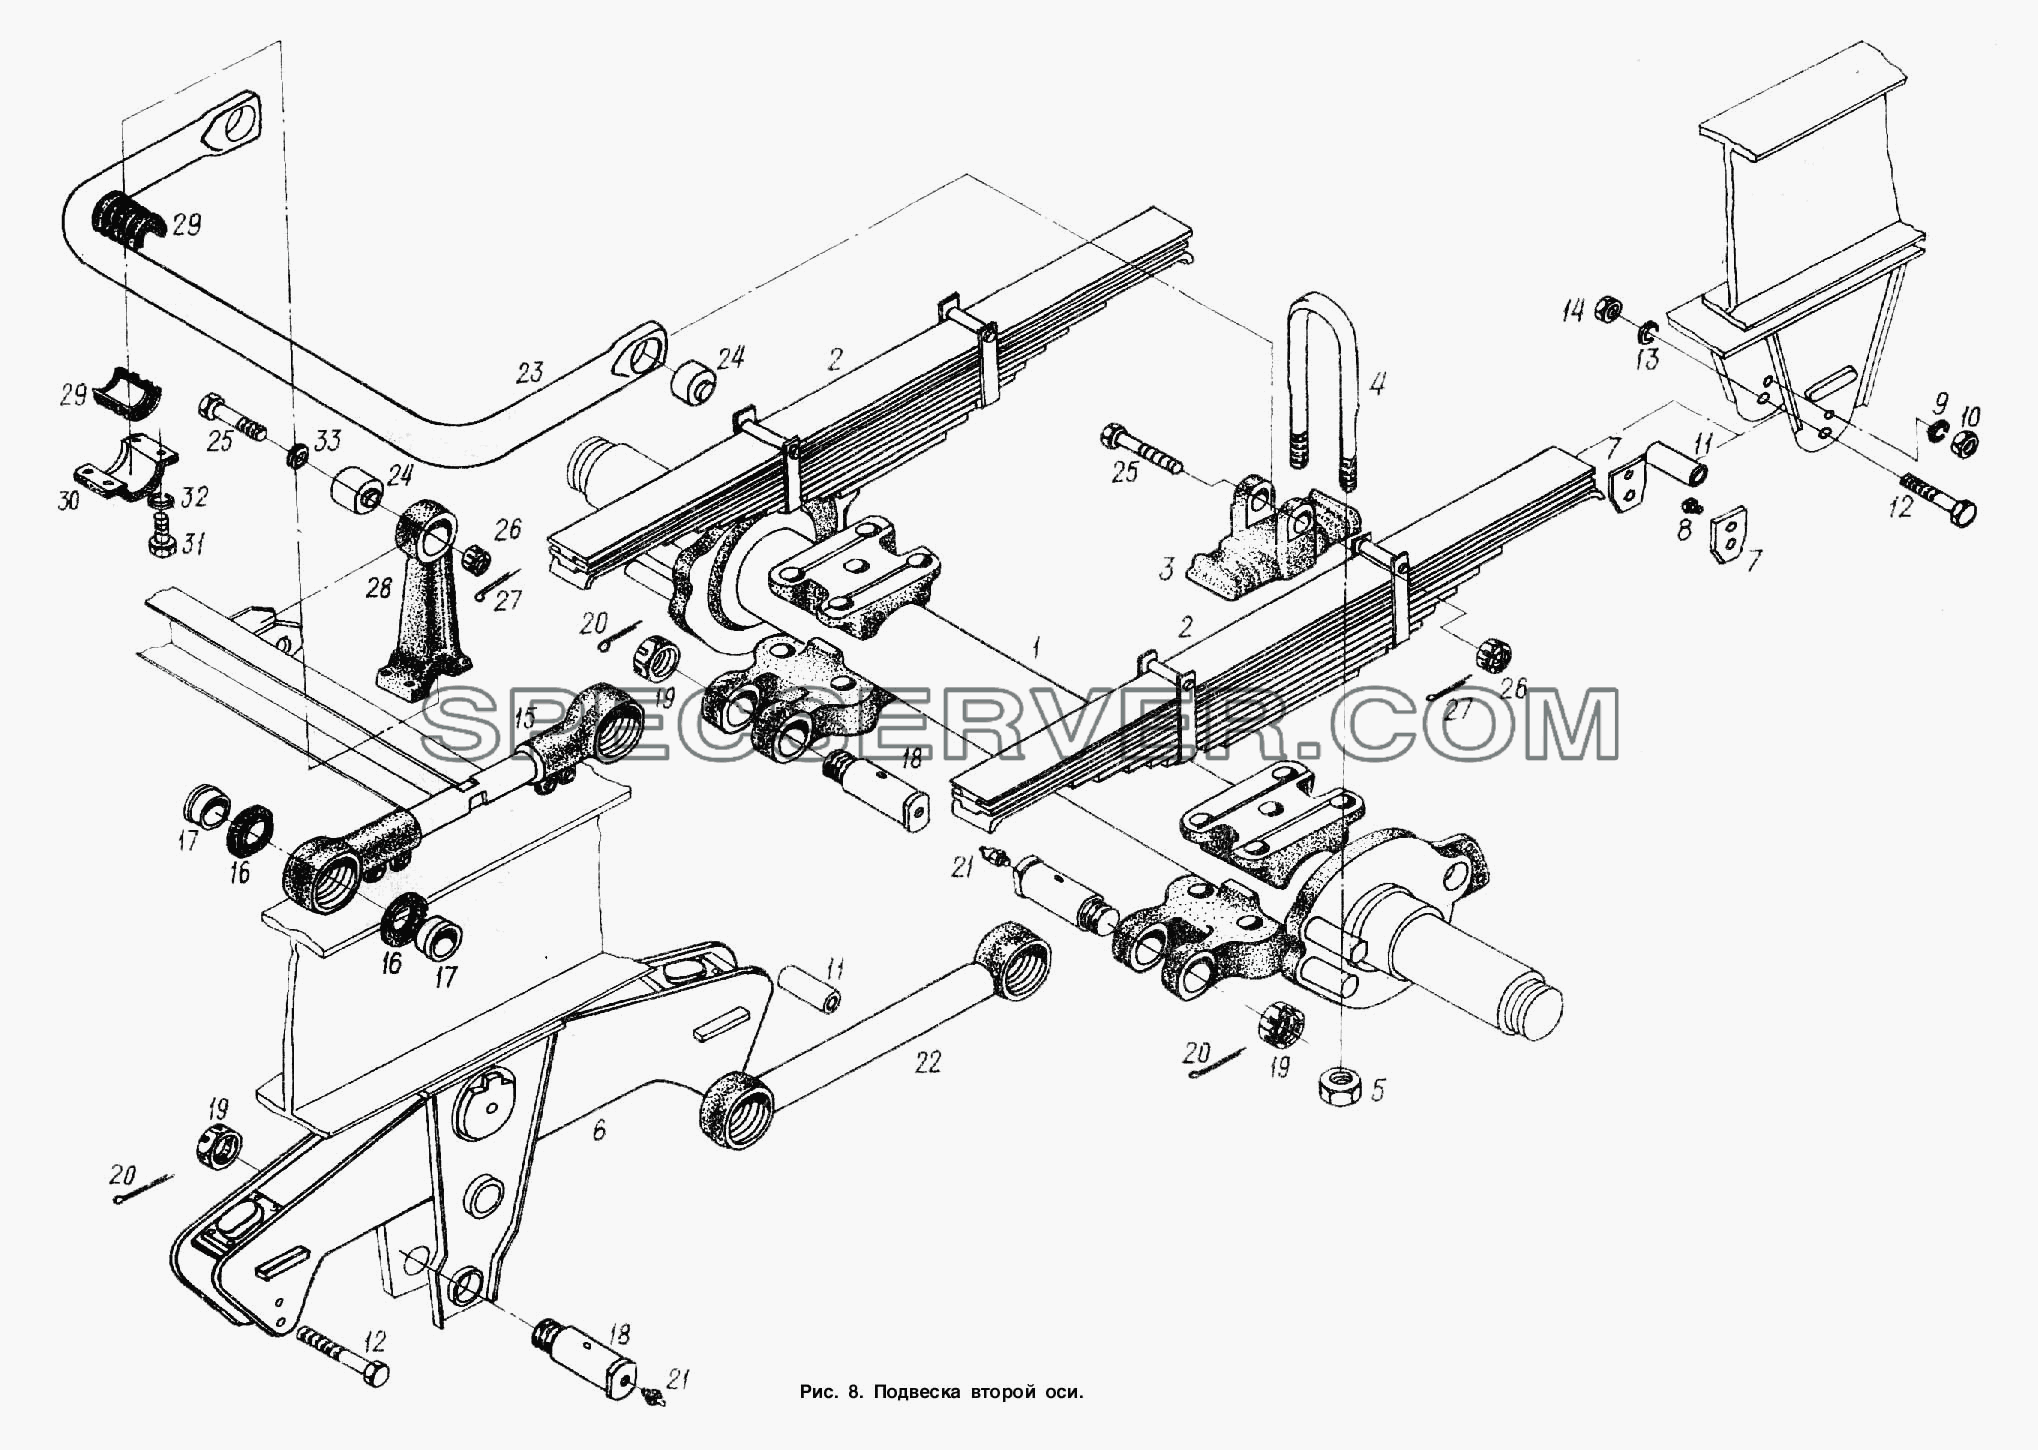 Подвеска. Установка второй оси для МАЗ-93802 (список запасных частей)